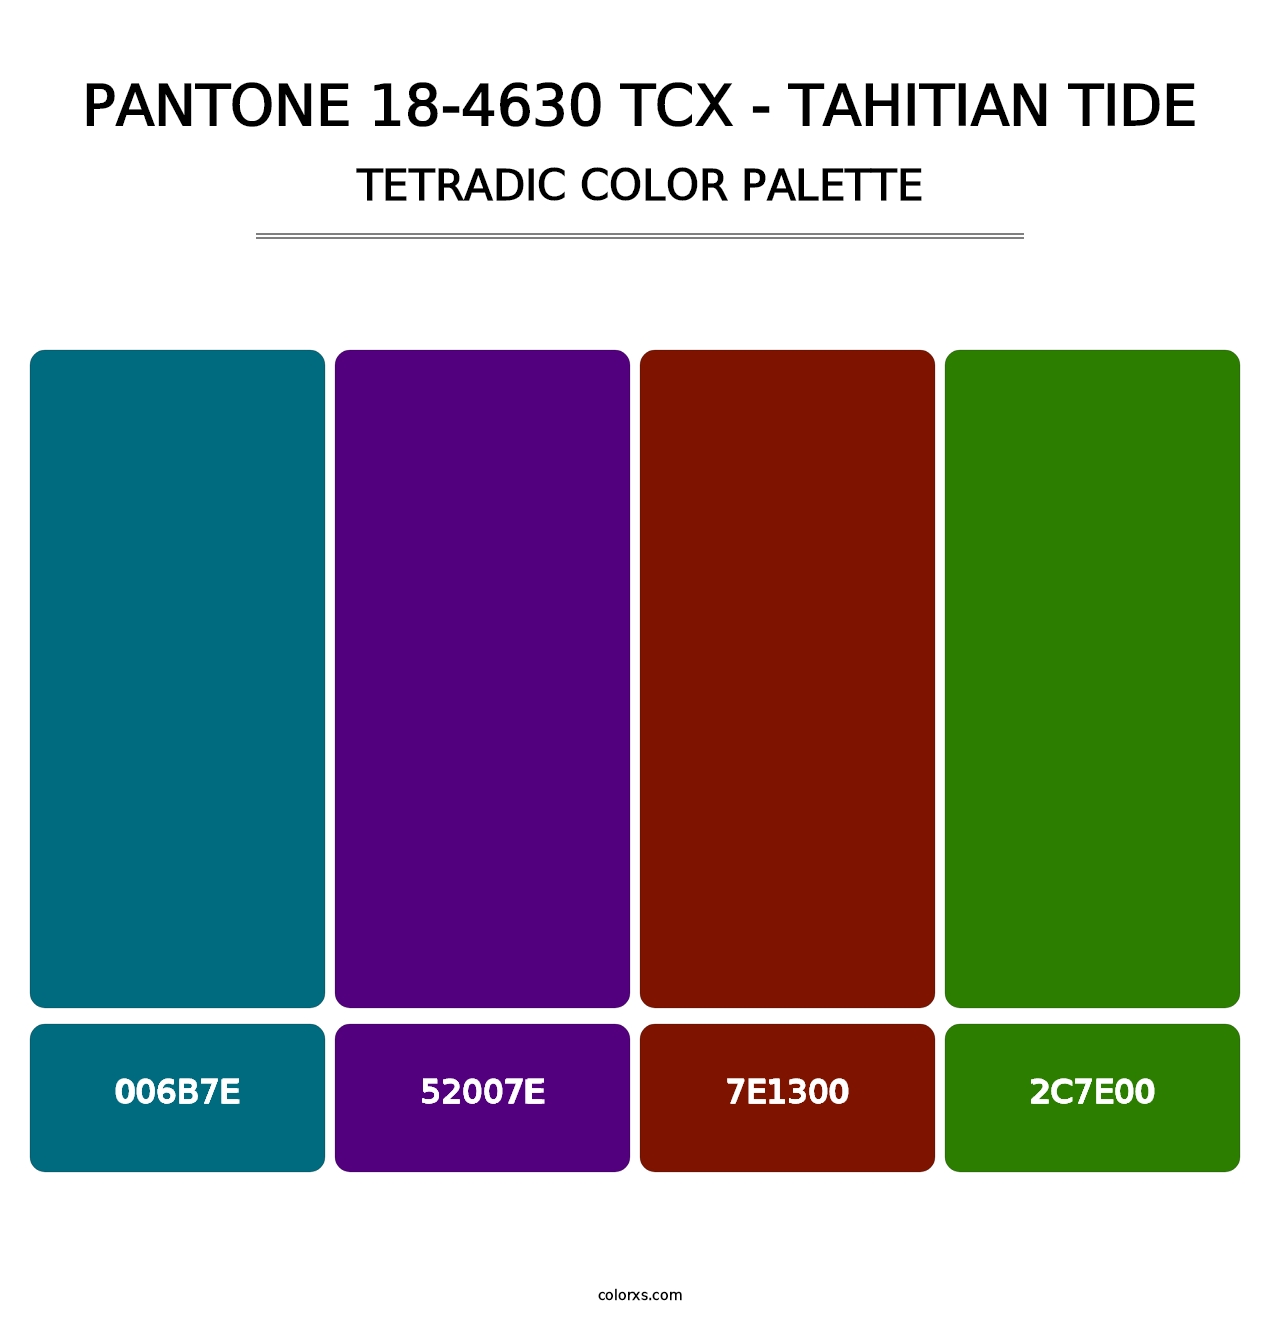 PANTONE 18-4630 TCX - Tahitian Tide - Tetradic Color Palette